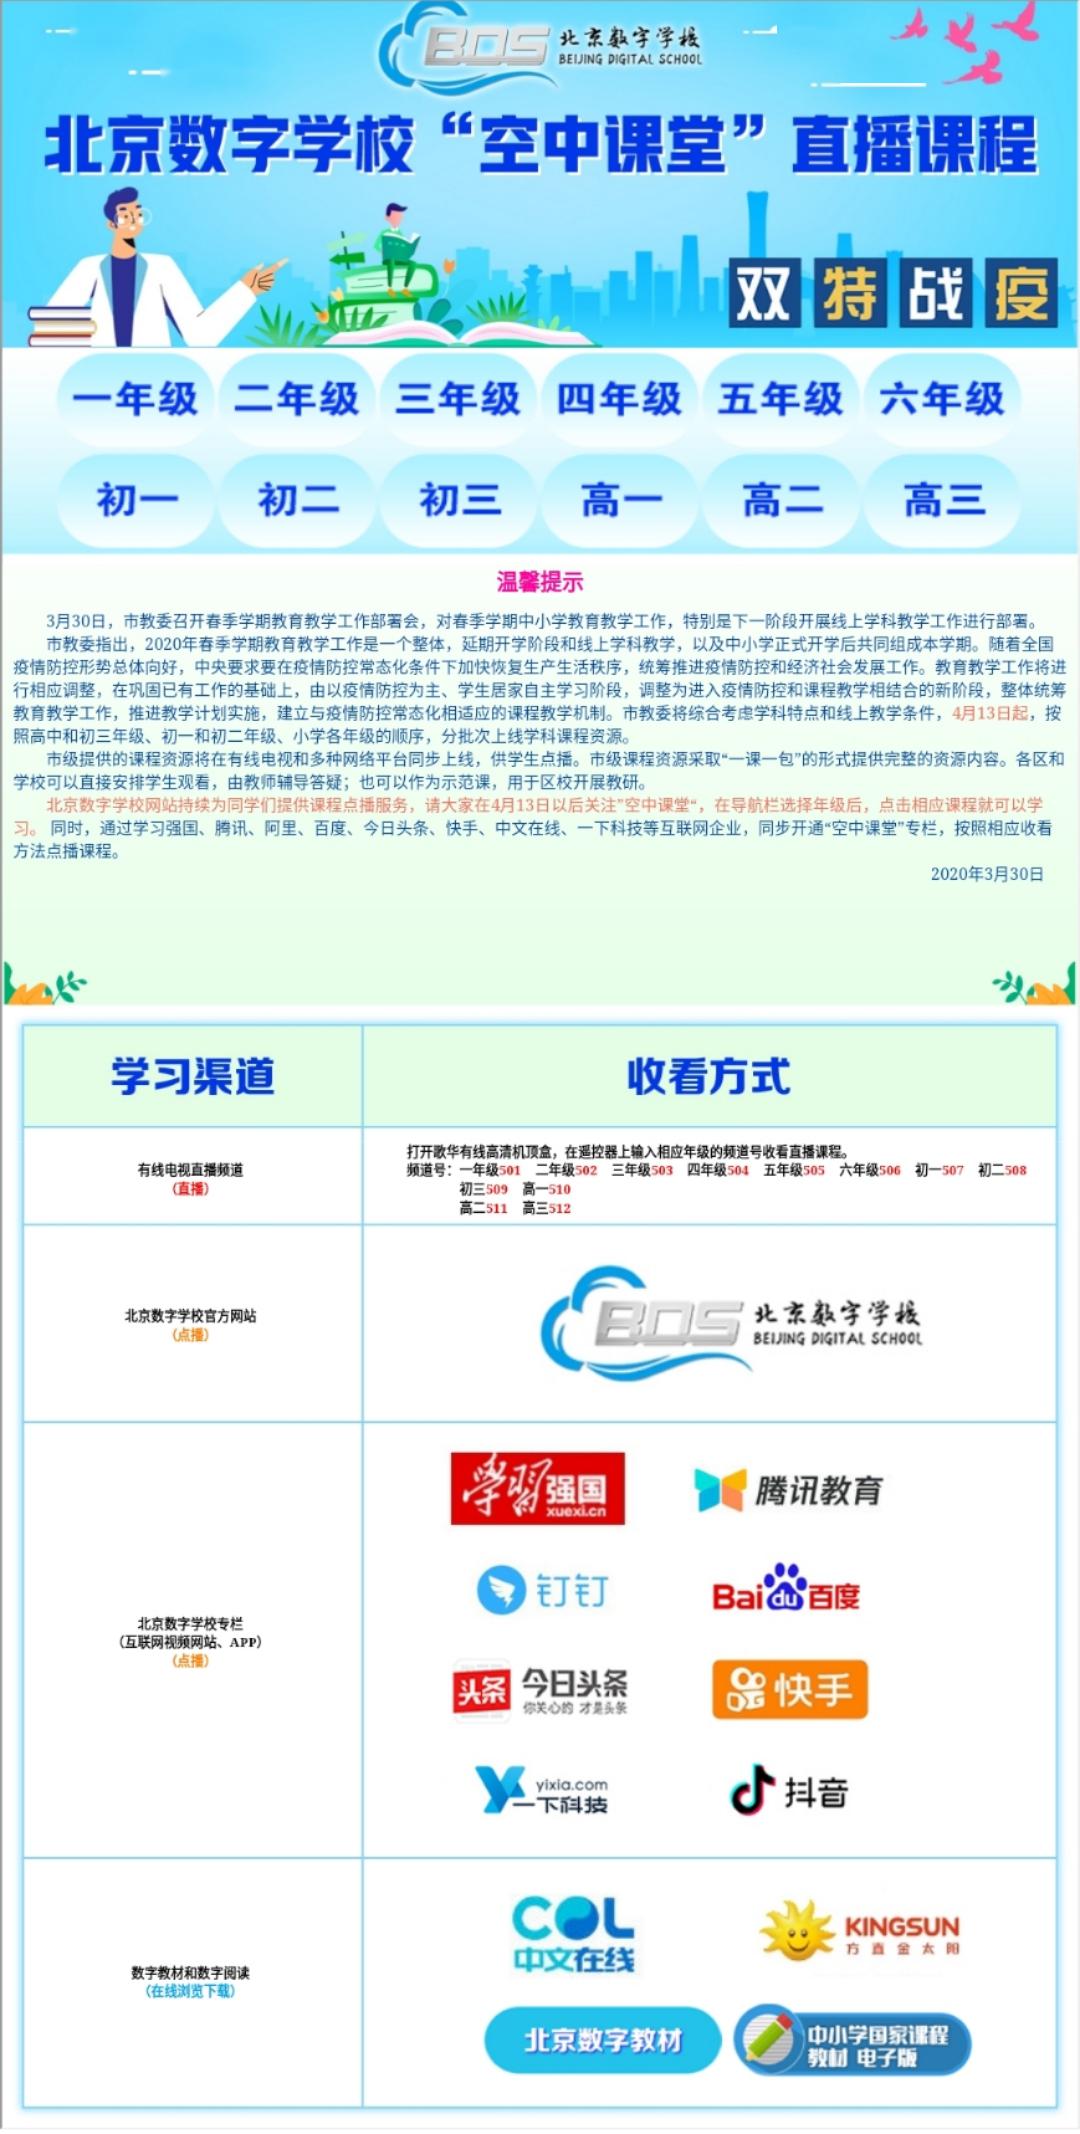 北京市中小学空中课堂操作手册及一课一包下载地址!